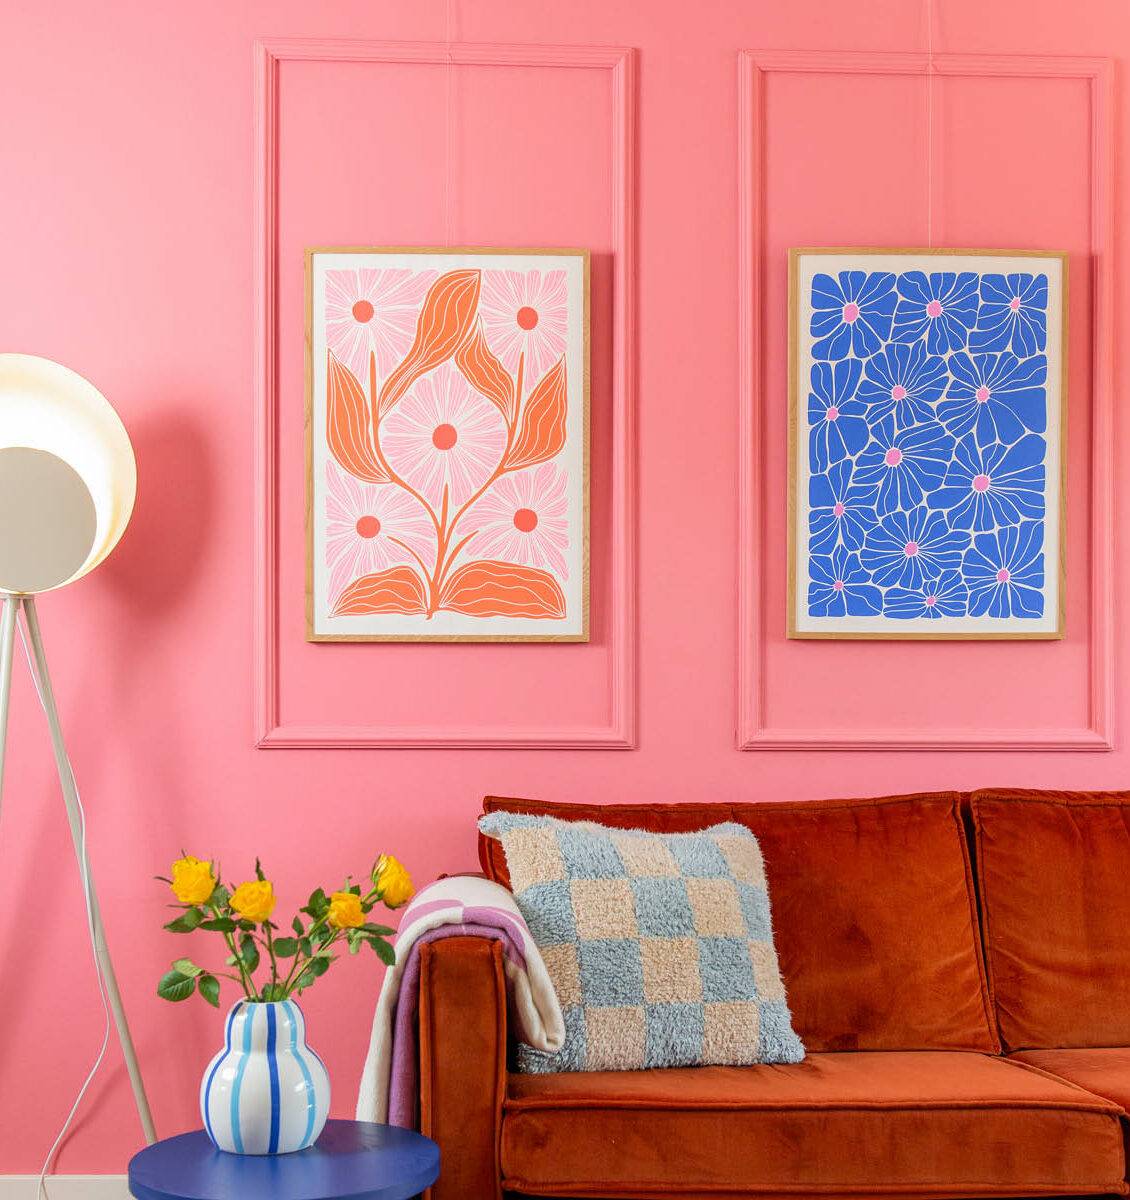 NL kleurrijke woonkamer met kleurrijke posters aan de wand